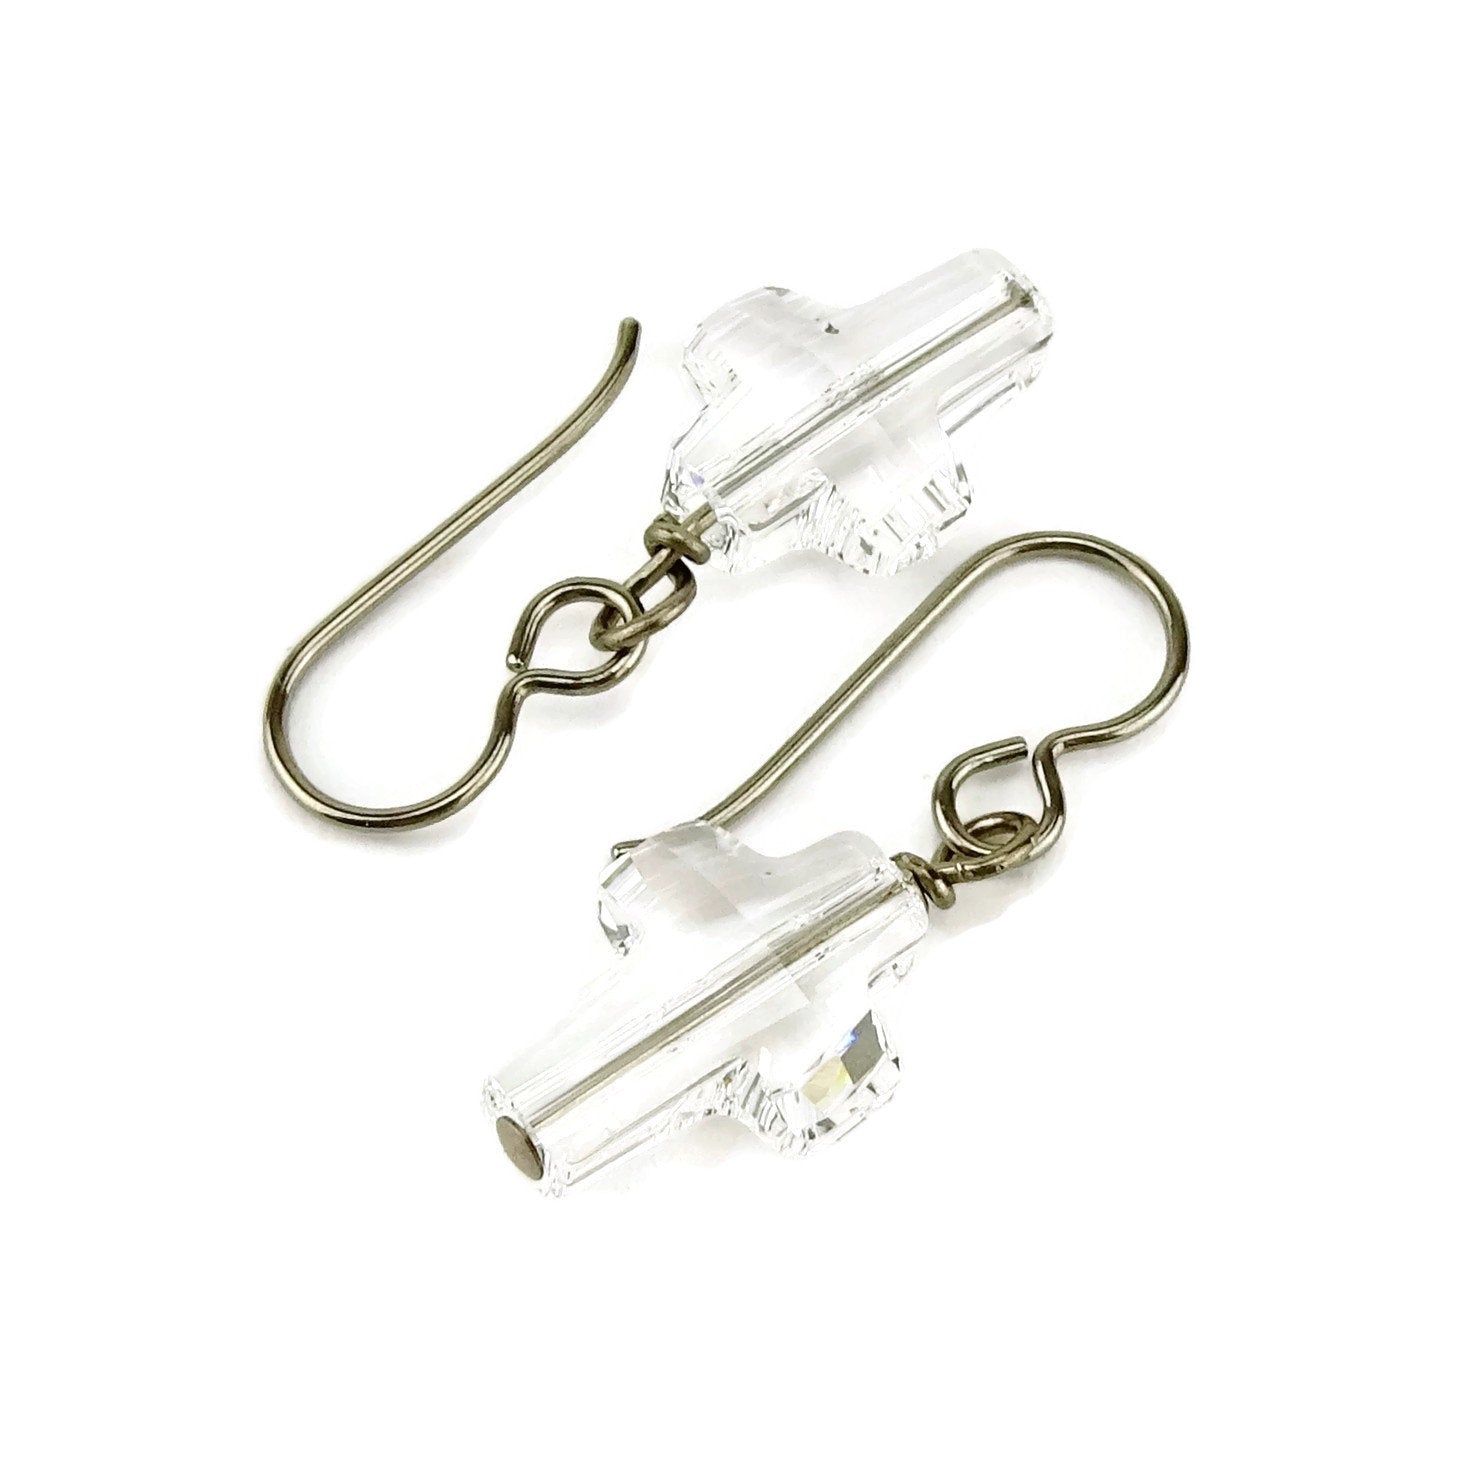 Clear Crystal Cross Titanium Earrings, Swarovski Crystal Cross Earrings for Sensitive Ears on Nickel Free Niobium or Titanium Earwires,